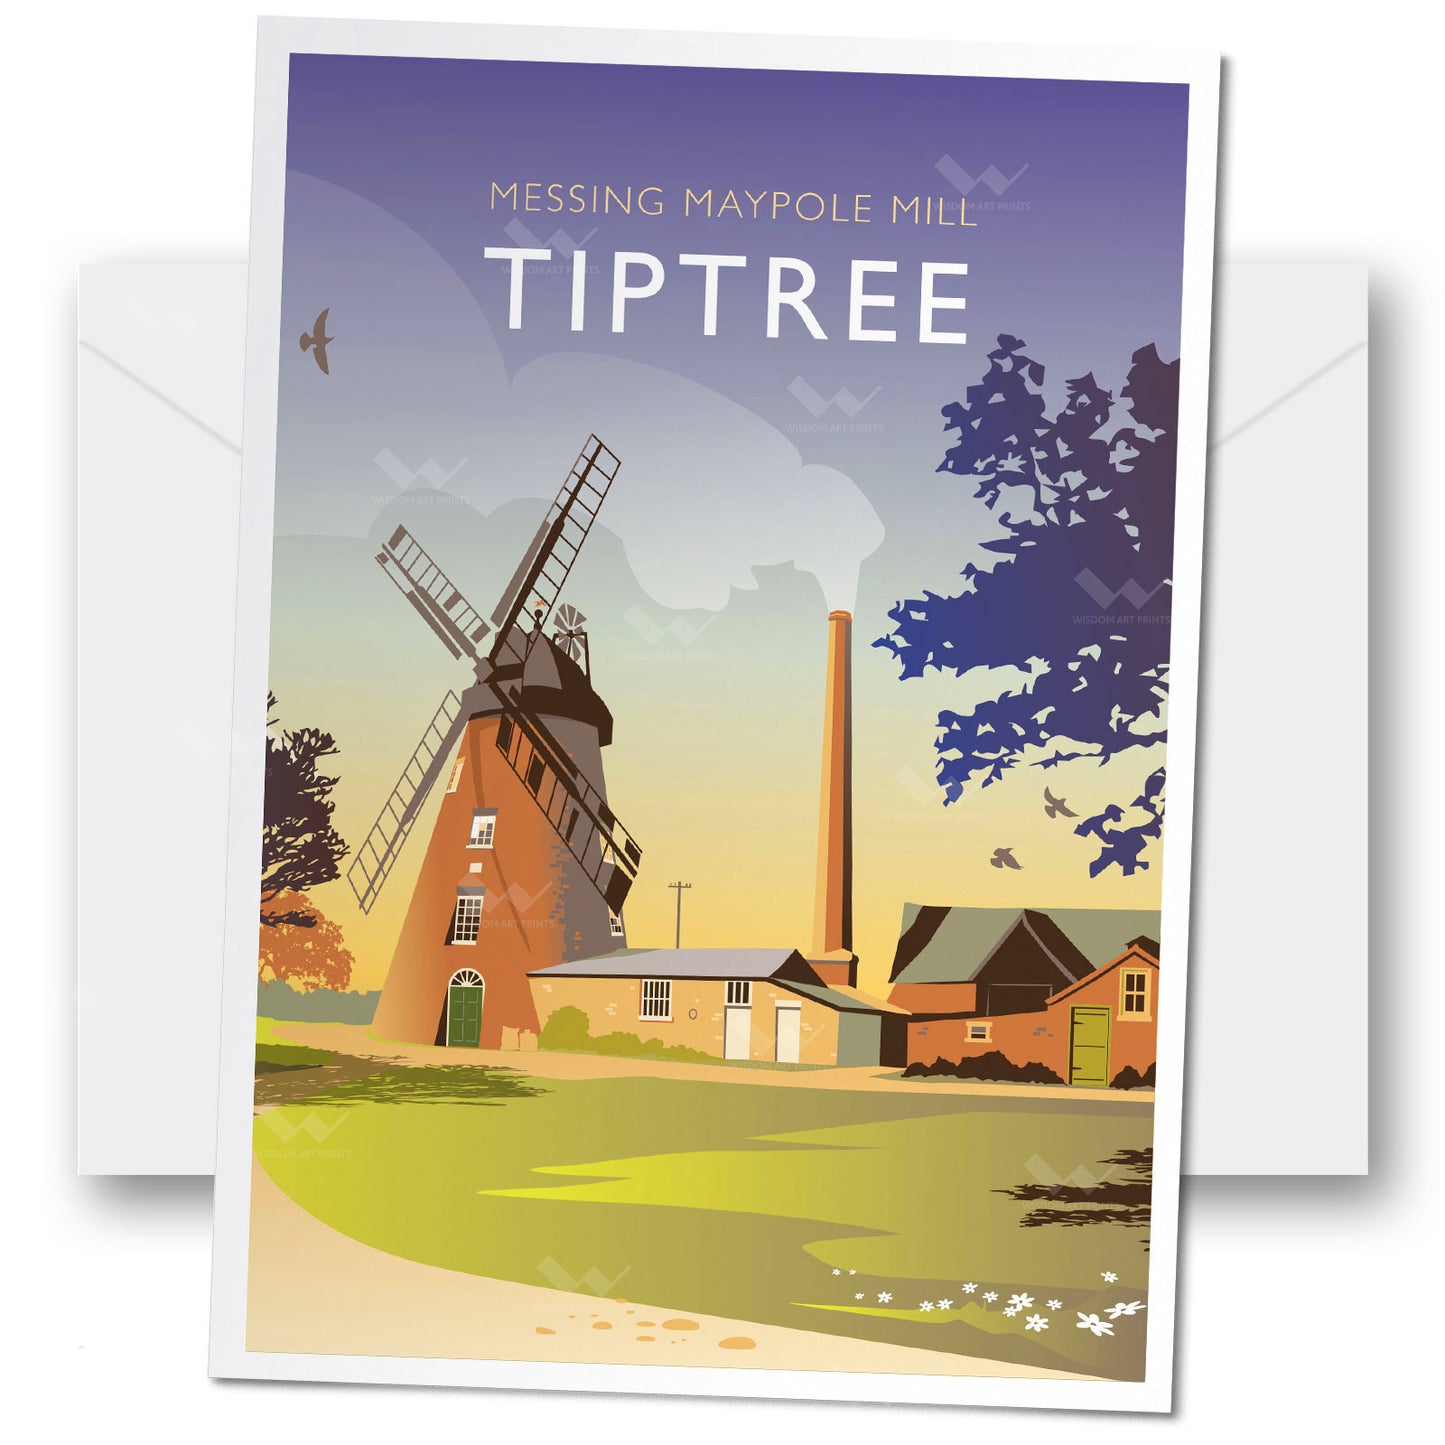 Tiptree, Essex